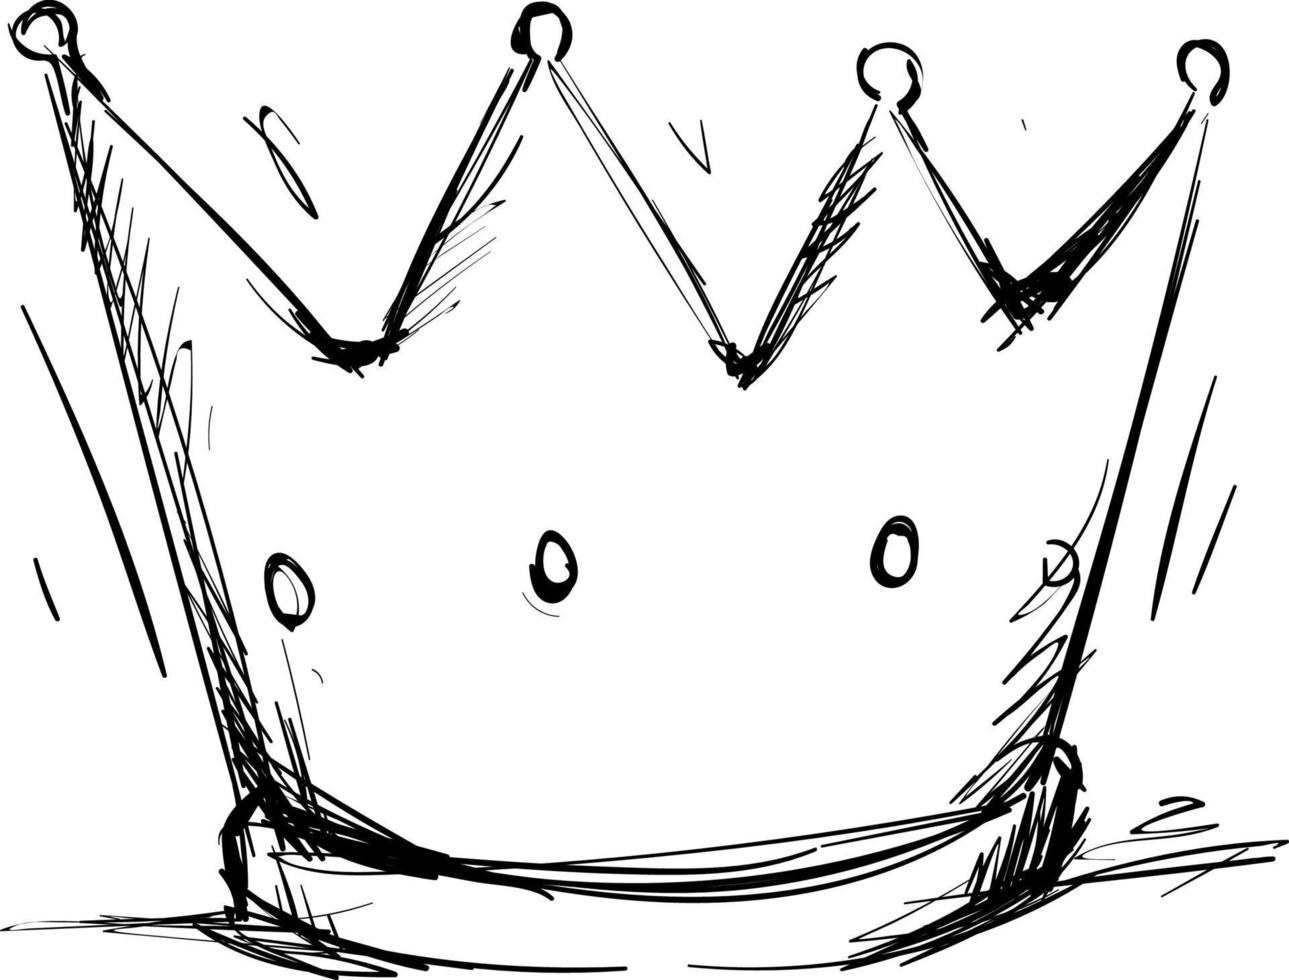 dessin de couronne, illustration, vecteur sur fond blanc.